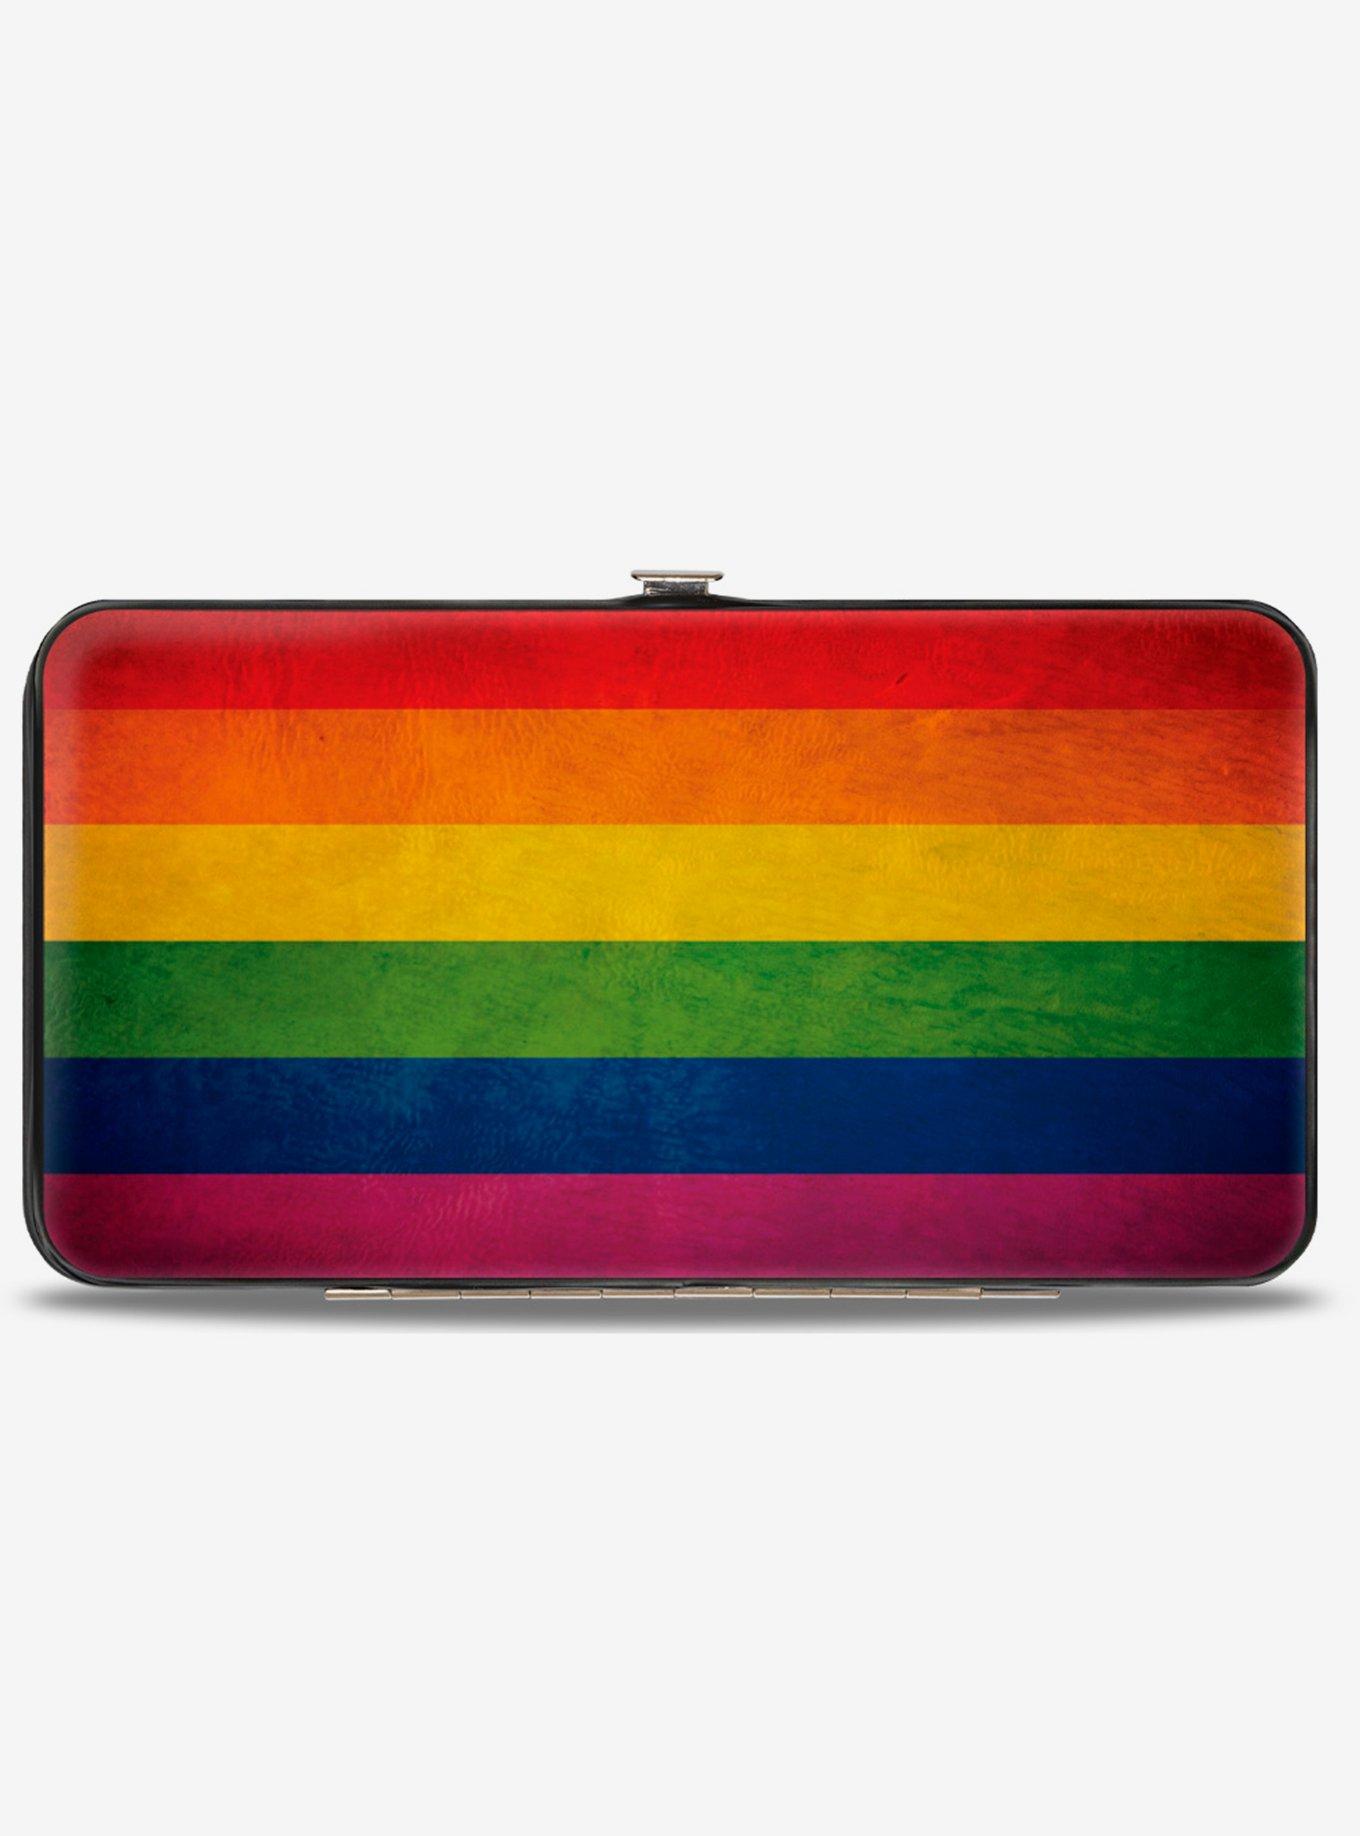 Weathered Rainbow Pride Flag Hinged Wallet, , hi-res